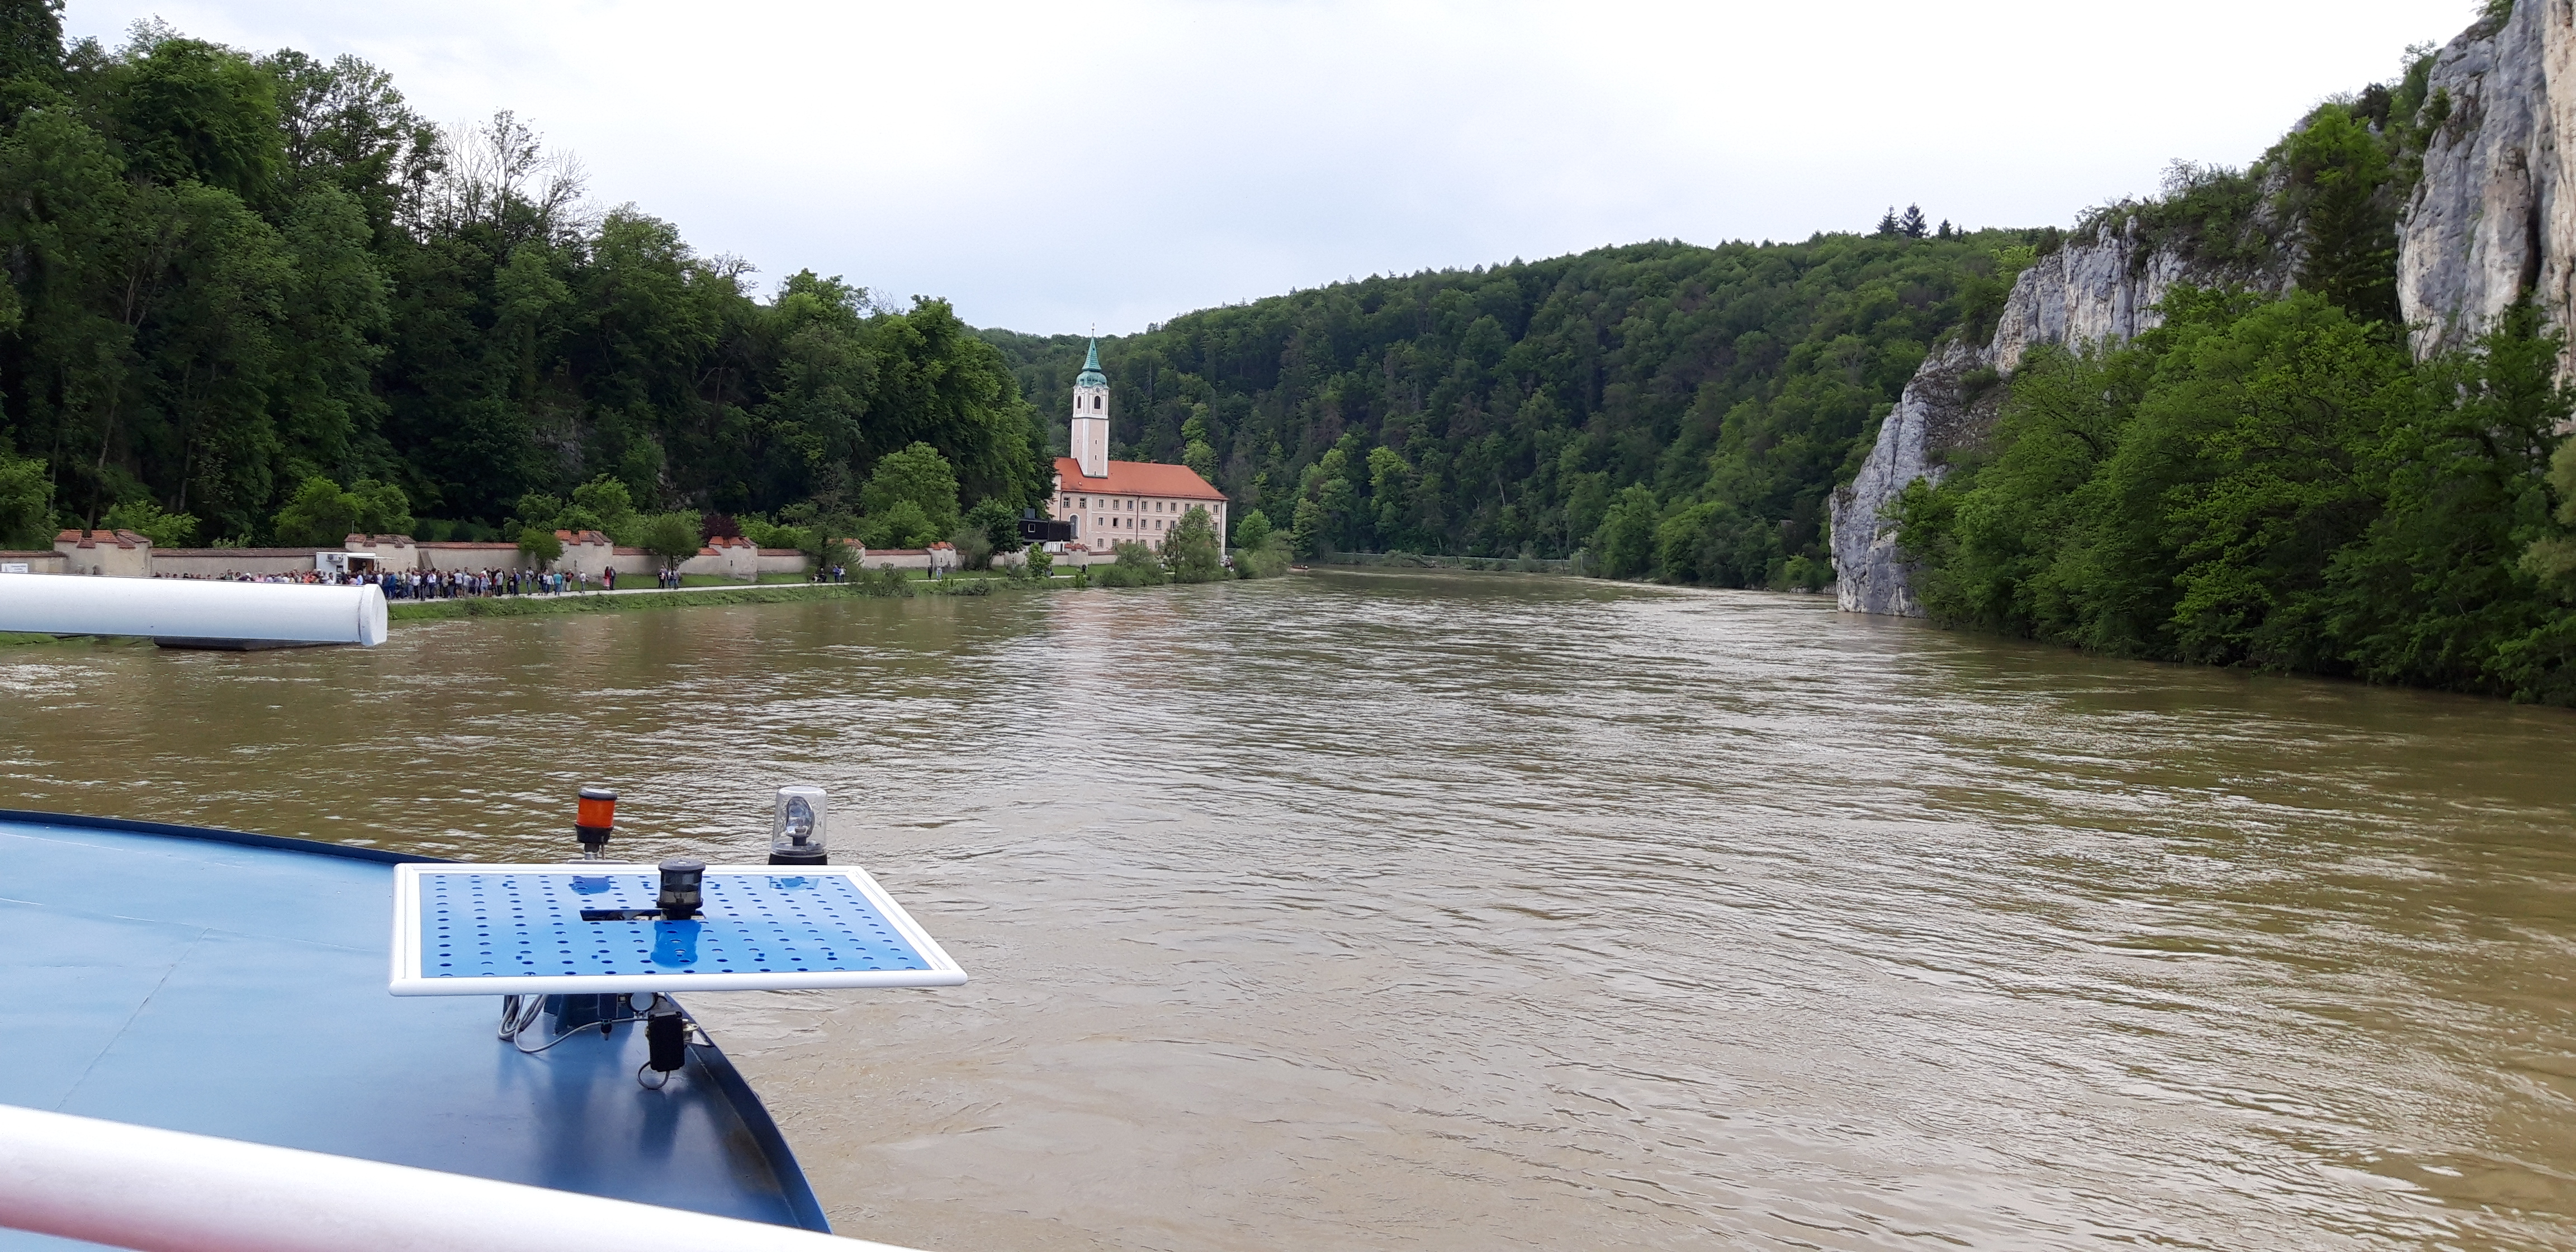 Donauschifffahrt